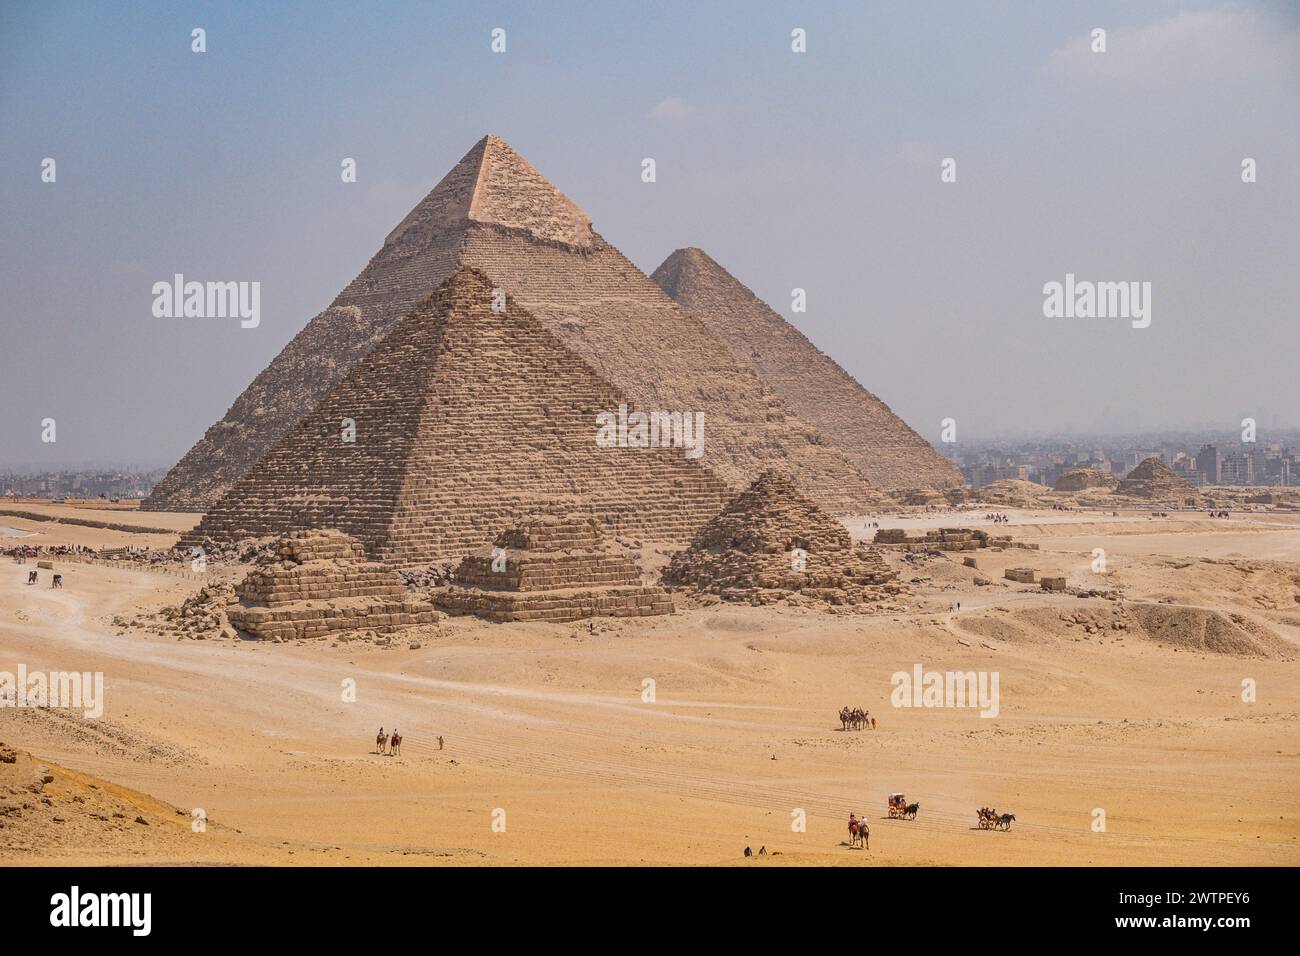 Nécropole de Gizeh, Pyramide de Mycerinus, Pyramide de Khafre et Pyramide de Khoufou, Egypte Banque D'Images